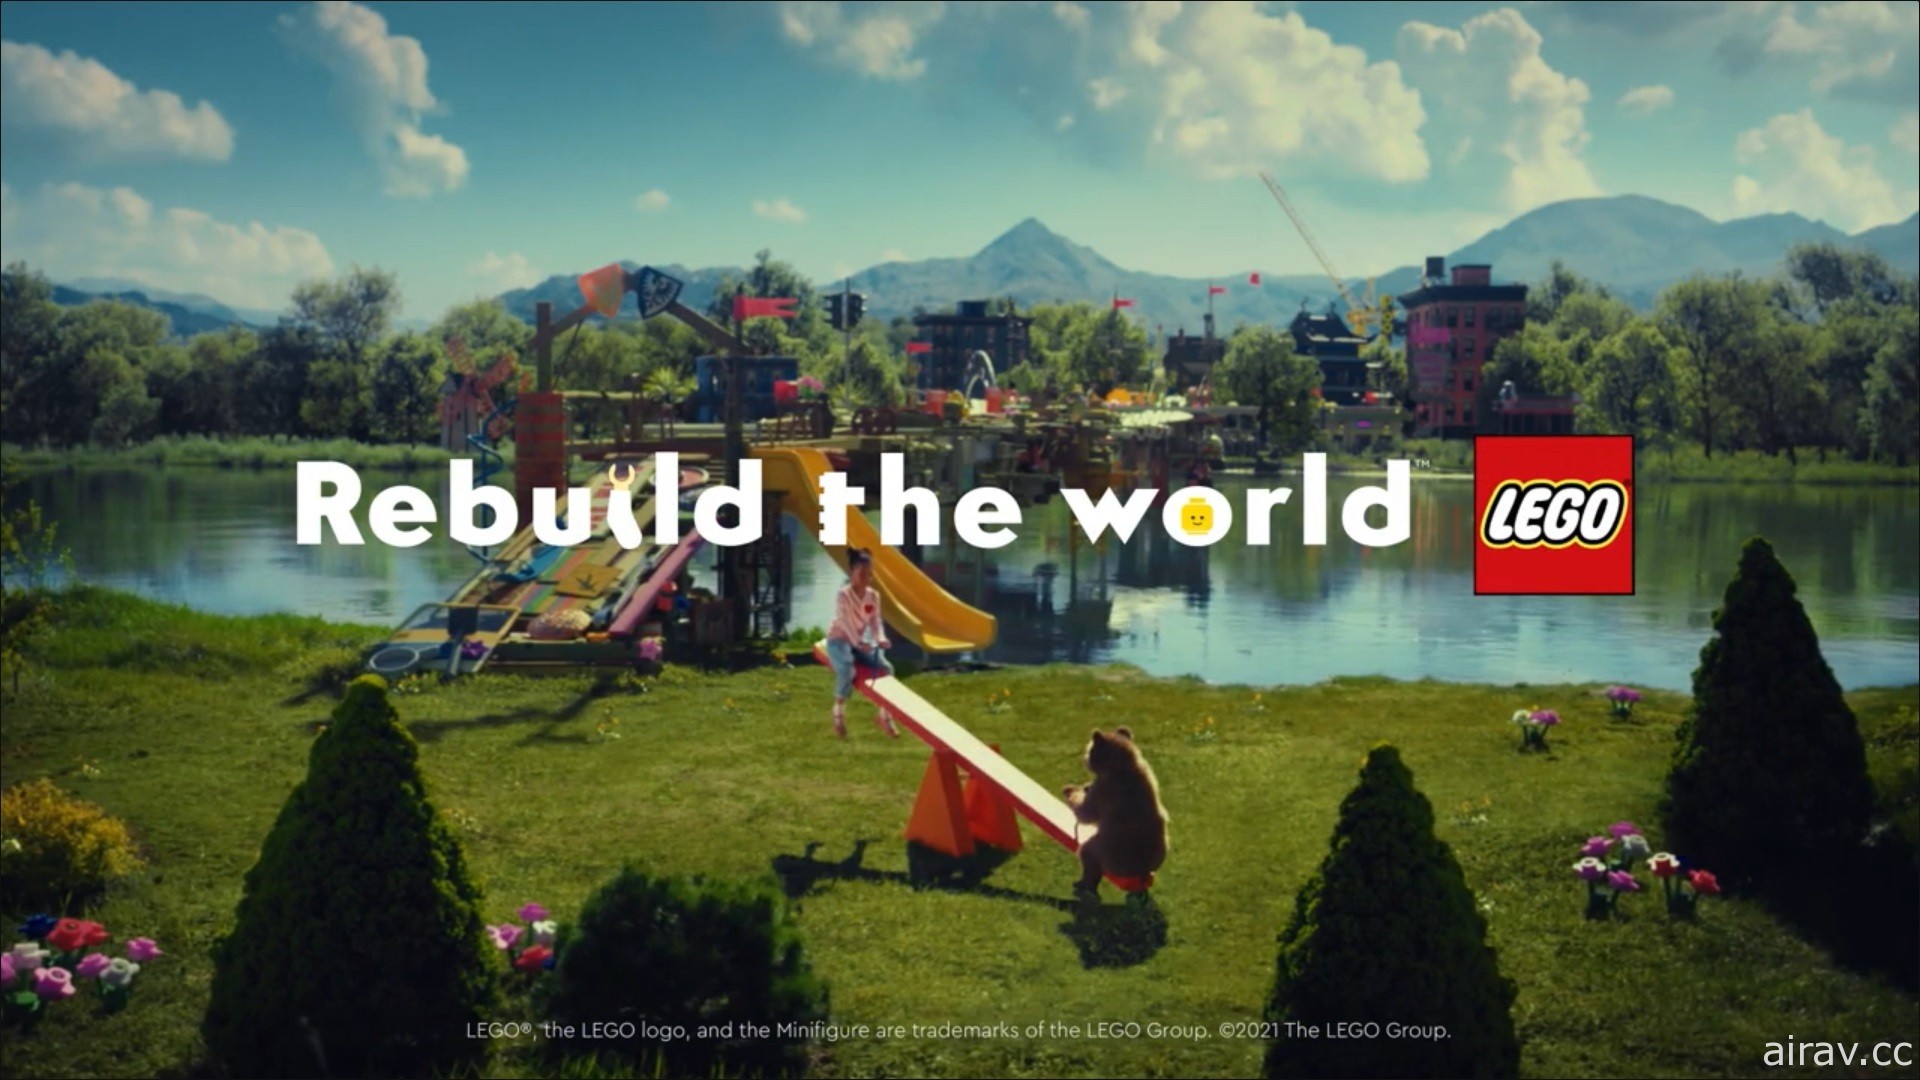 響應樂高全球品牌理念「Rebuild the World」創意徵件活動即日起在台開跑